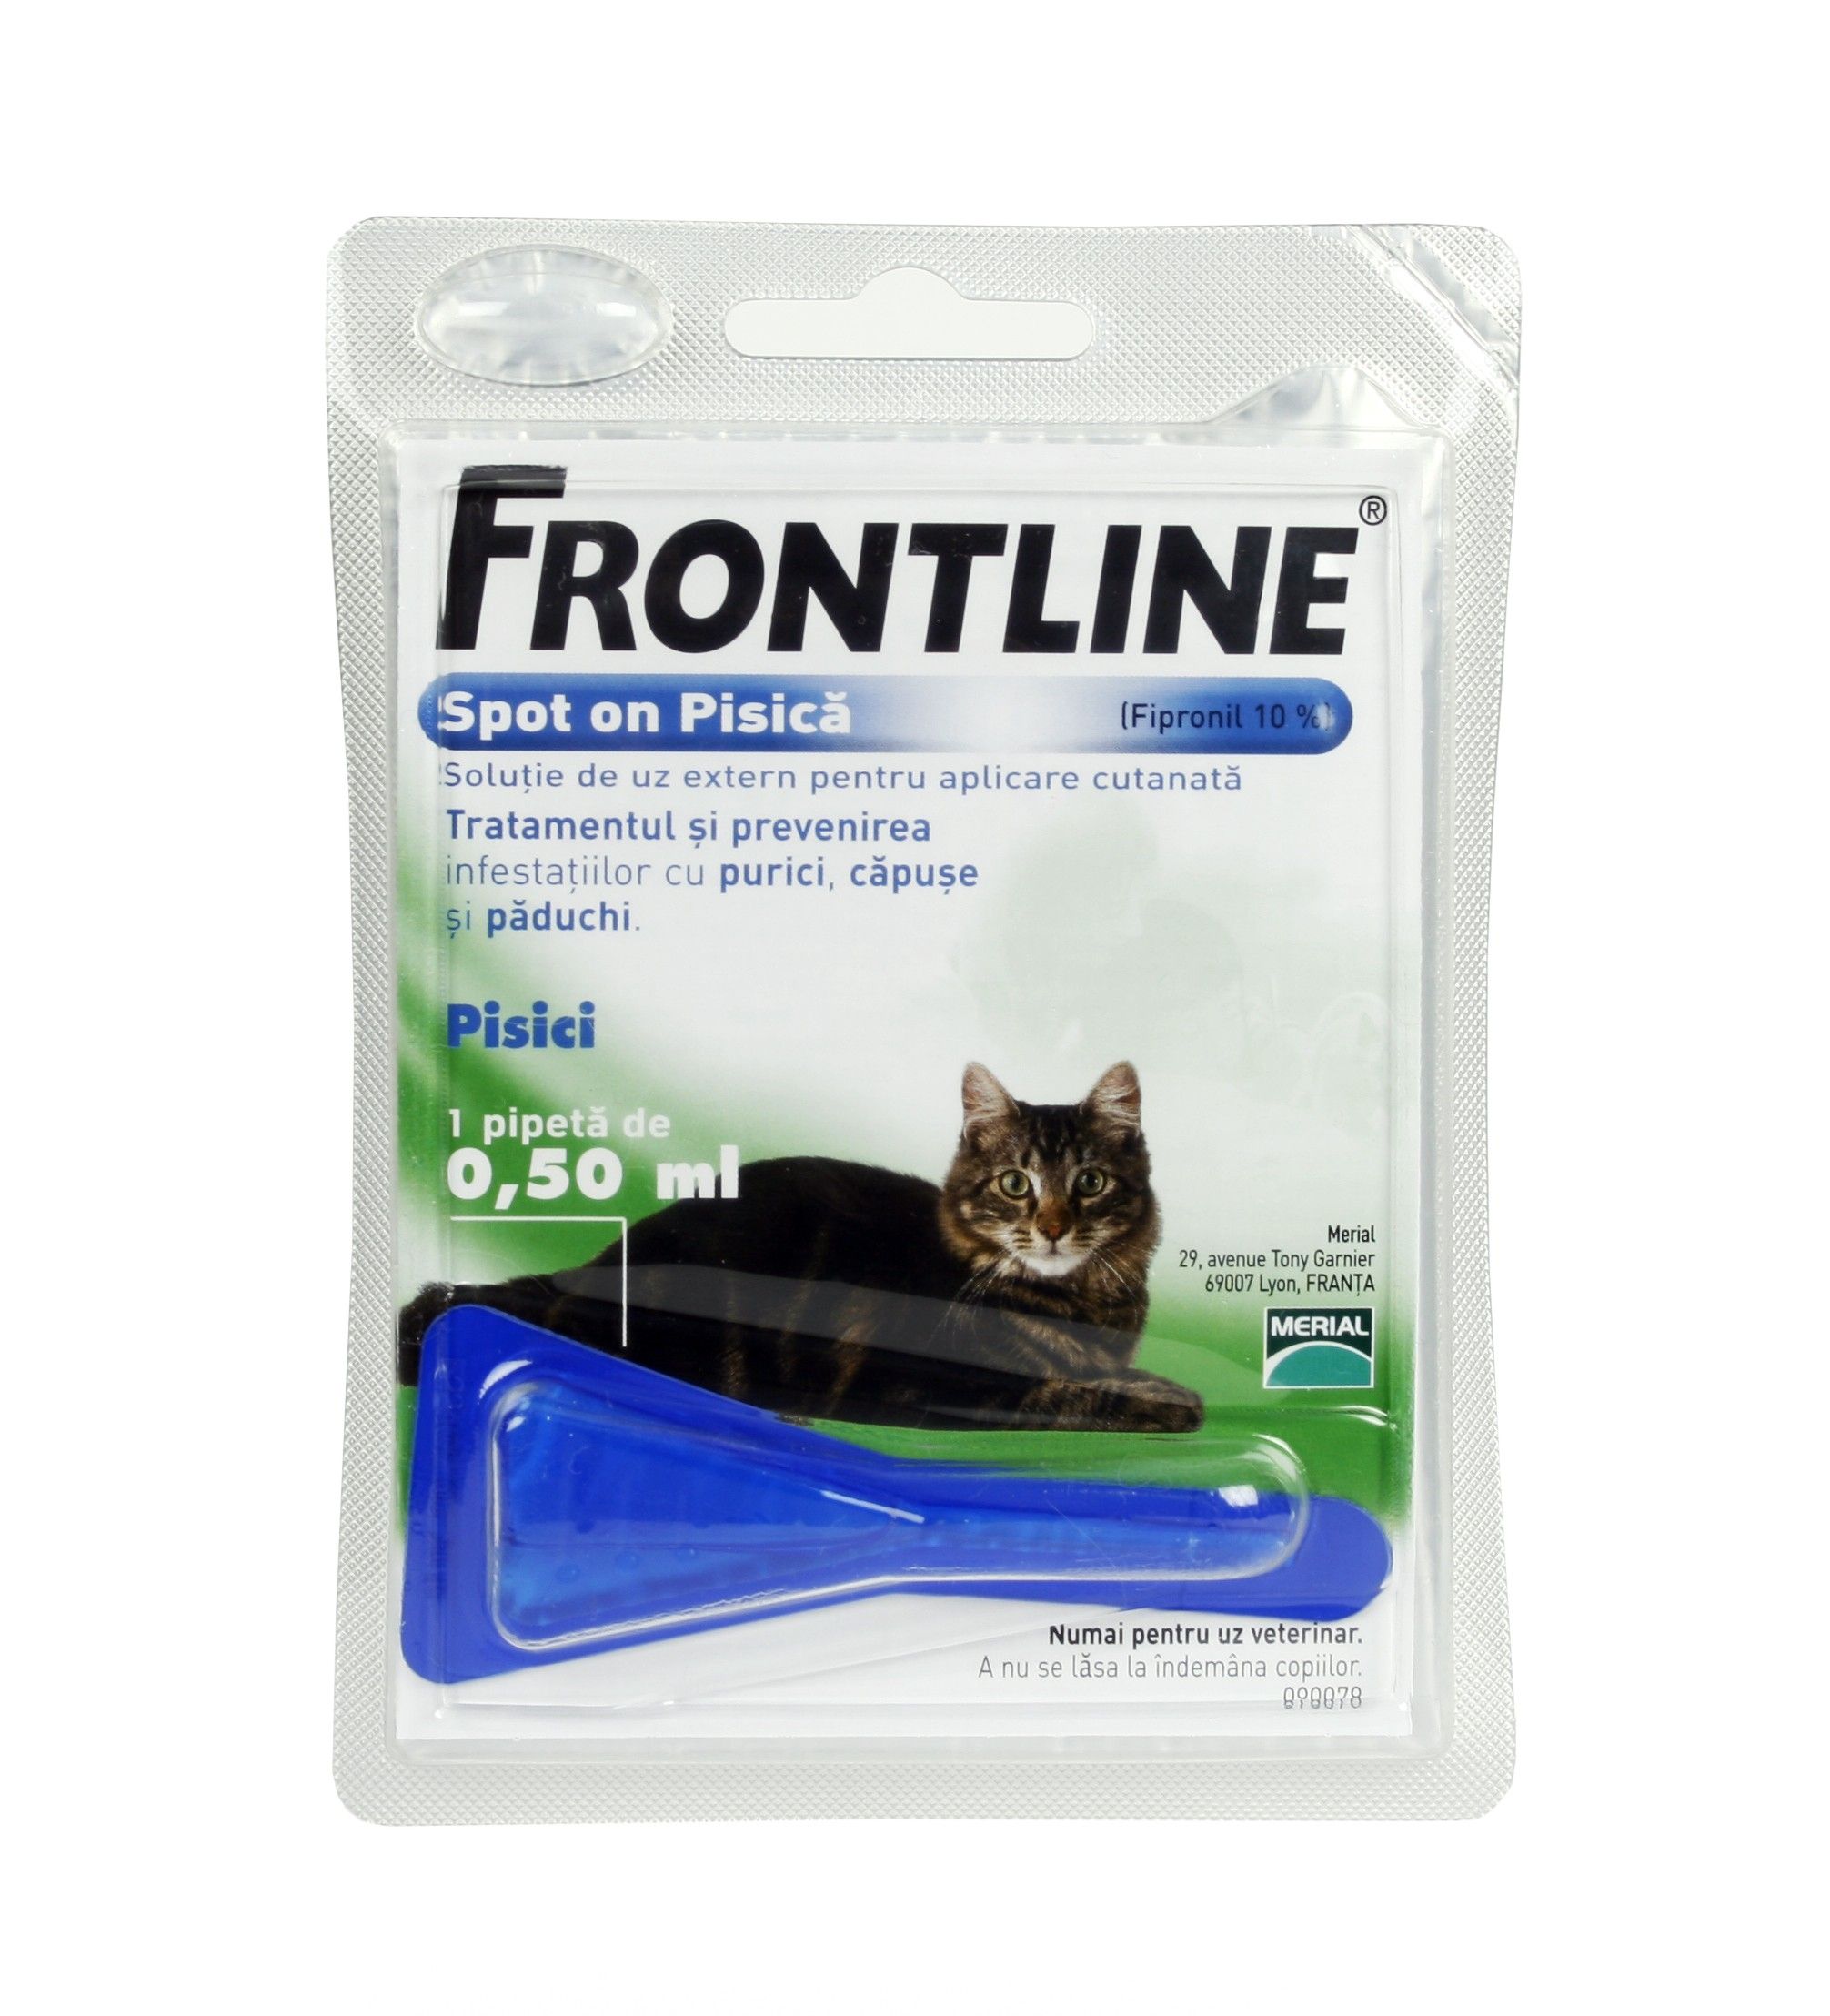 Frontline Spot On Pisica - 1 Pipeta Antiparazitara